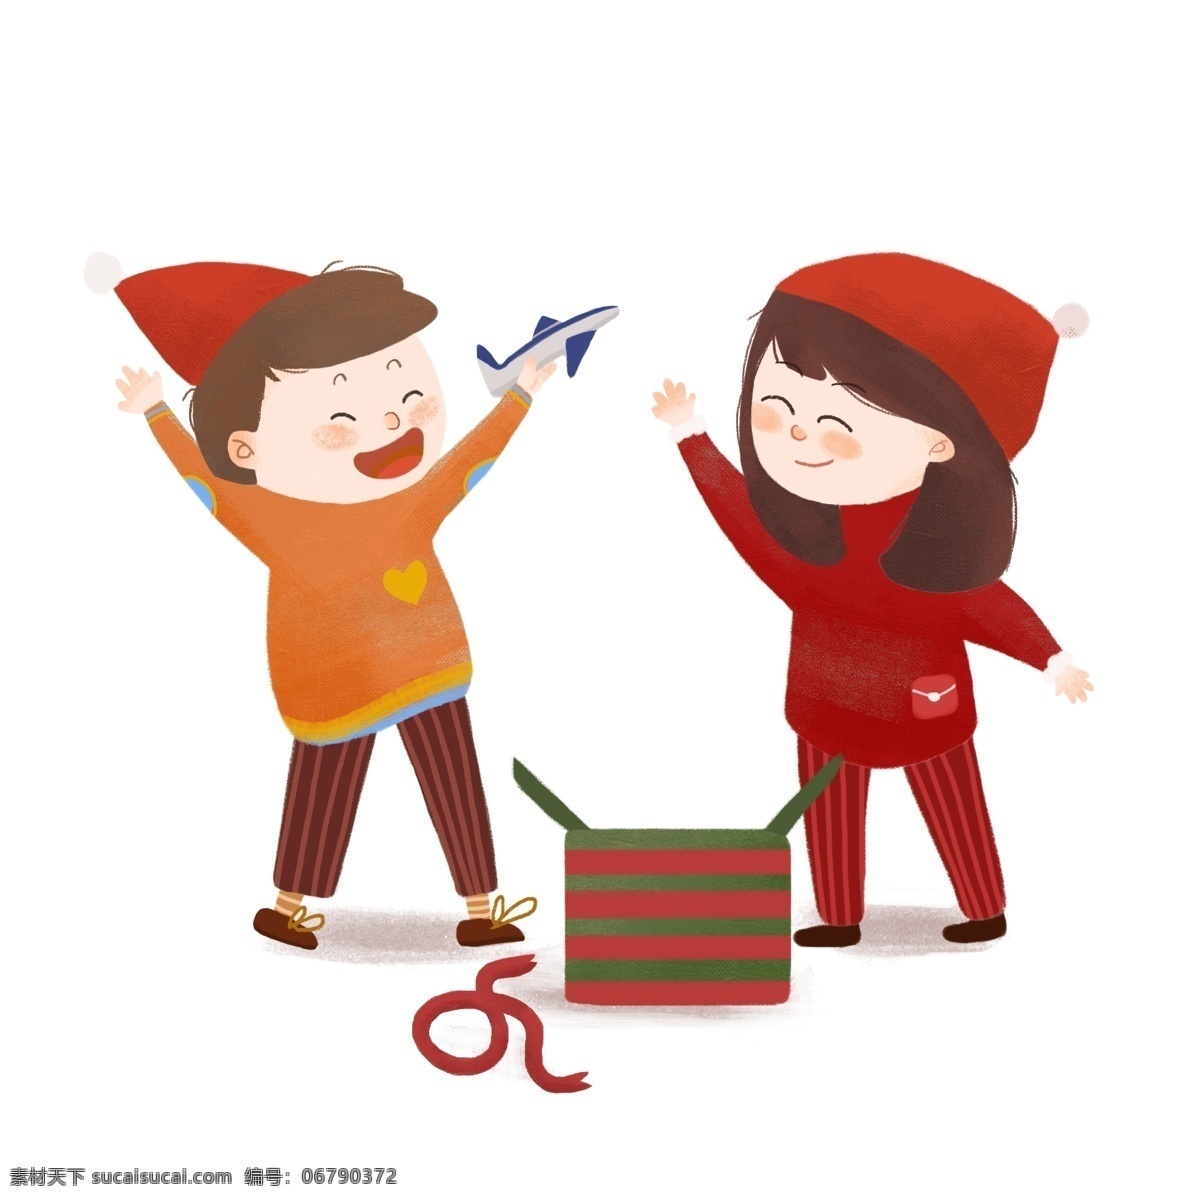 收到 礼物 开心 两个 小朋友 圣诞节 小男孩儿 小女孩儿 礼物盒子 飞机玩具 手舞足蹈 表情 帽子 卡通 手绘 红色 白色